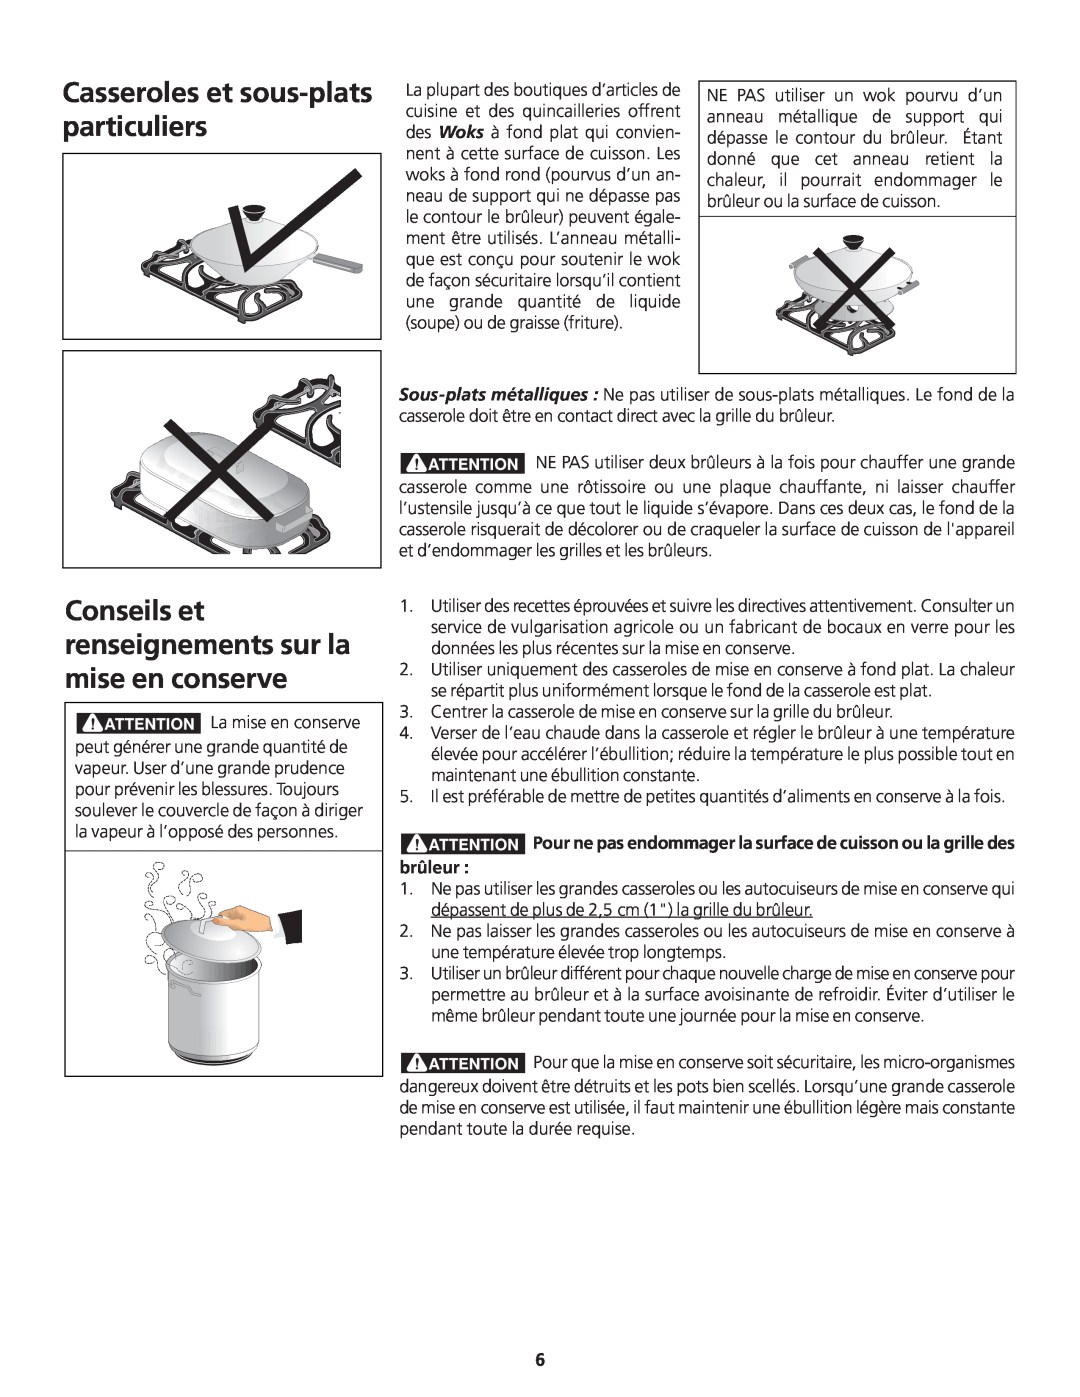 Frigidaire 318200869 manual Casseroles et sous-plats particuliers, Conseils et renseignements sur la mise en conserve 